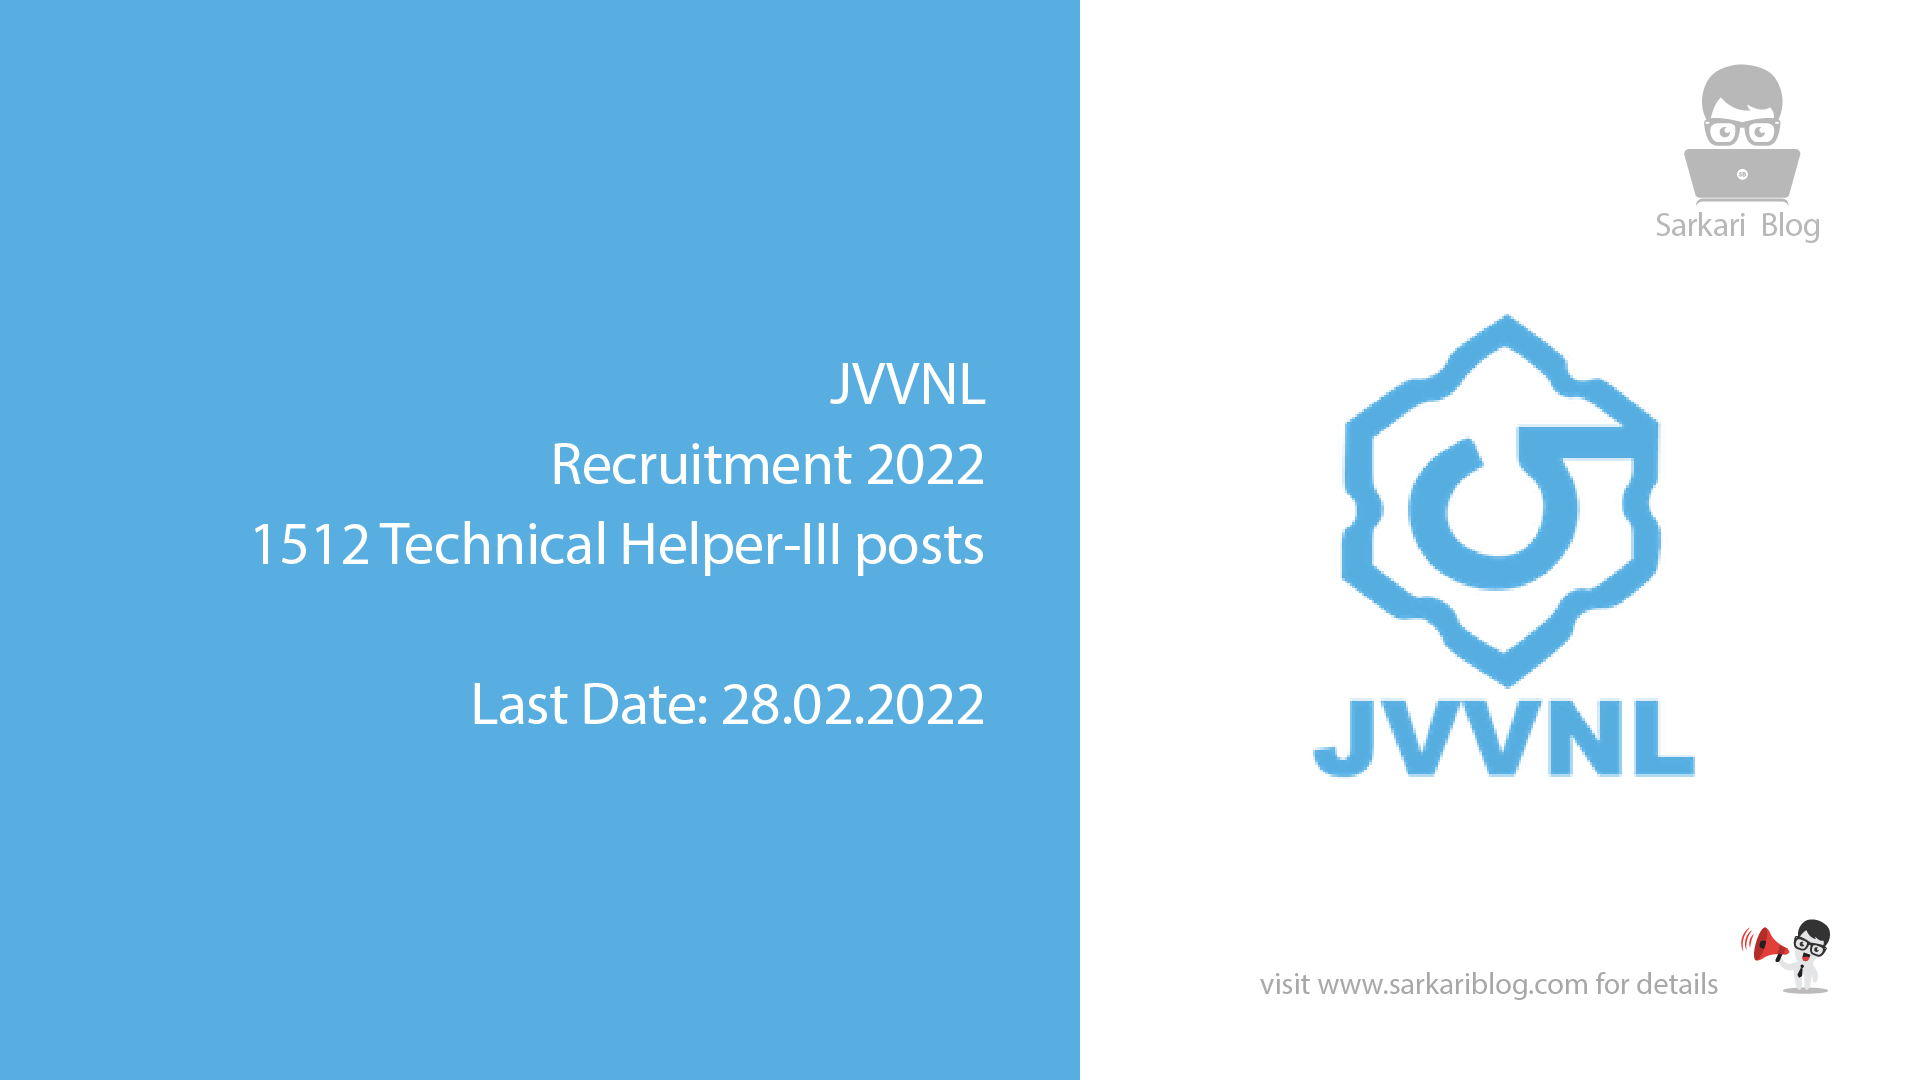 JVVNL Recruitment 2022